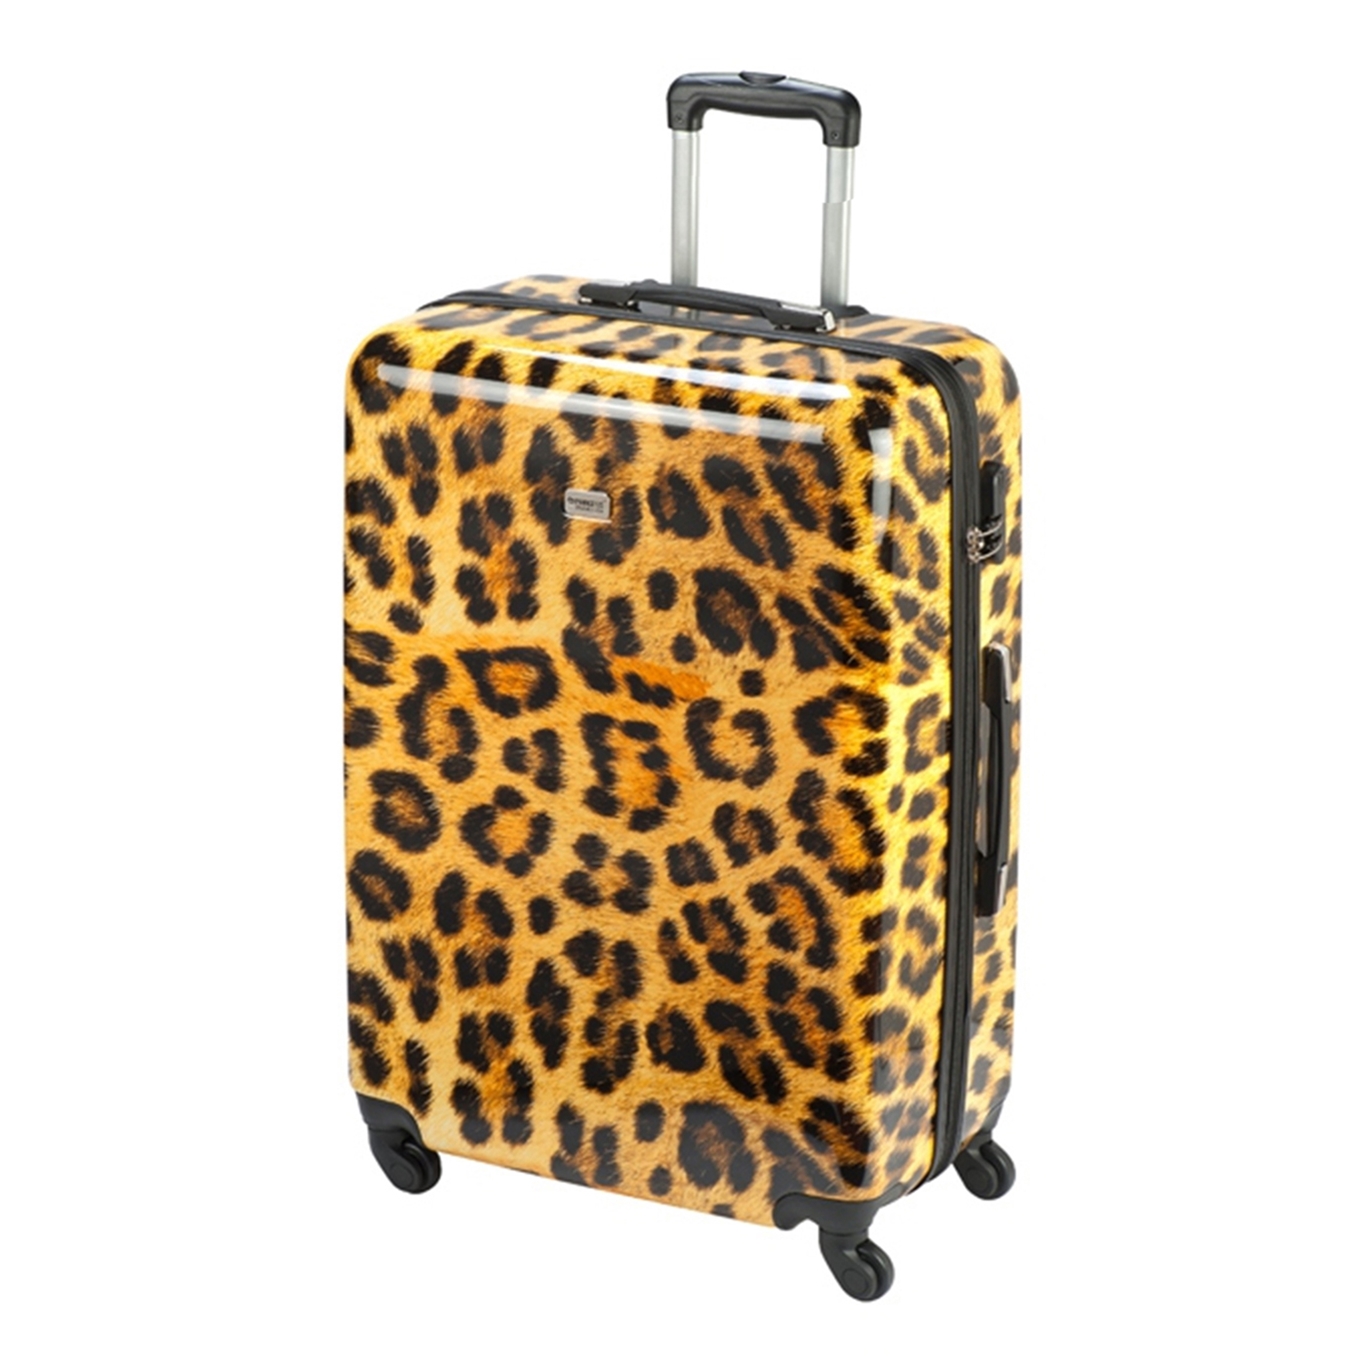 Koffer kopen? Ontdek Princess Traveller koffers online | Travelbags.nl